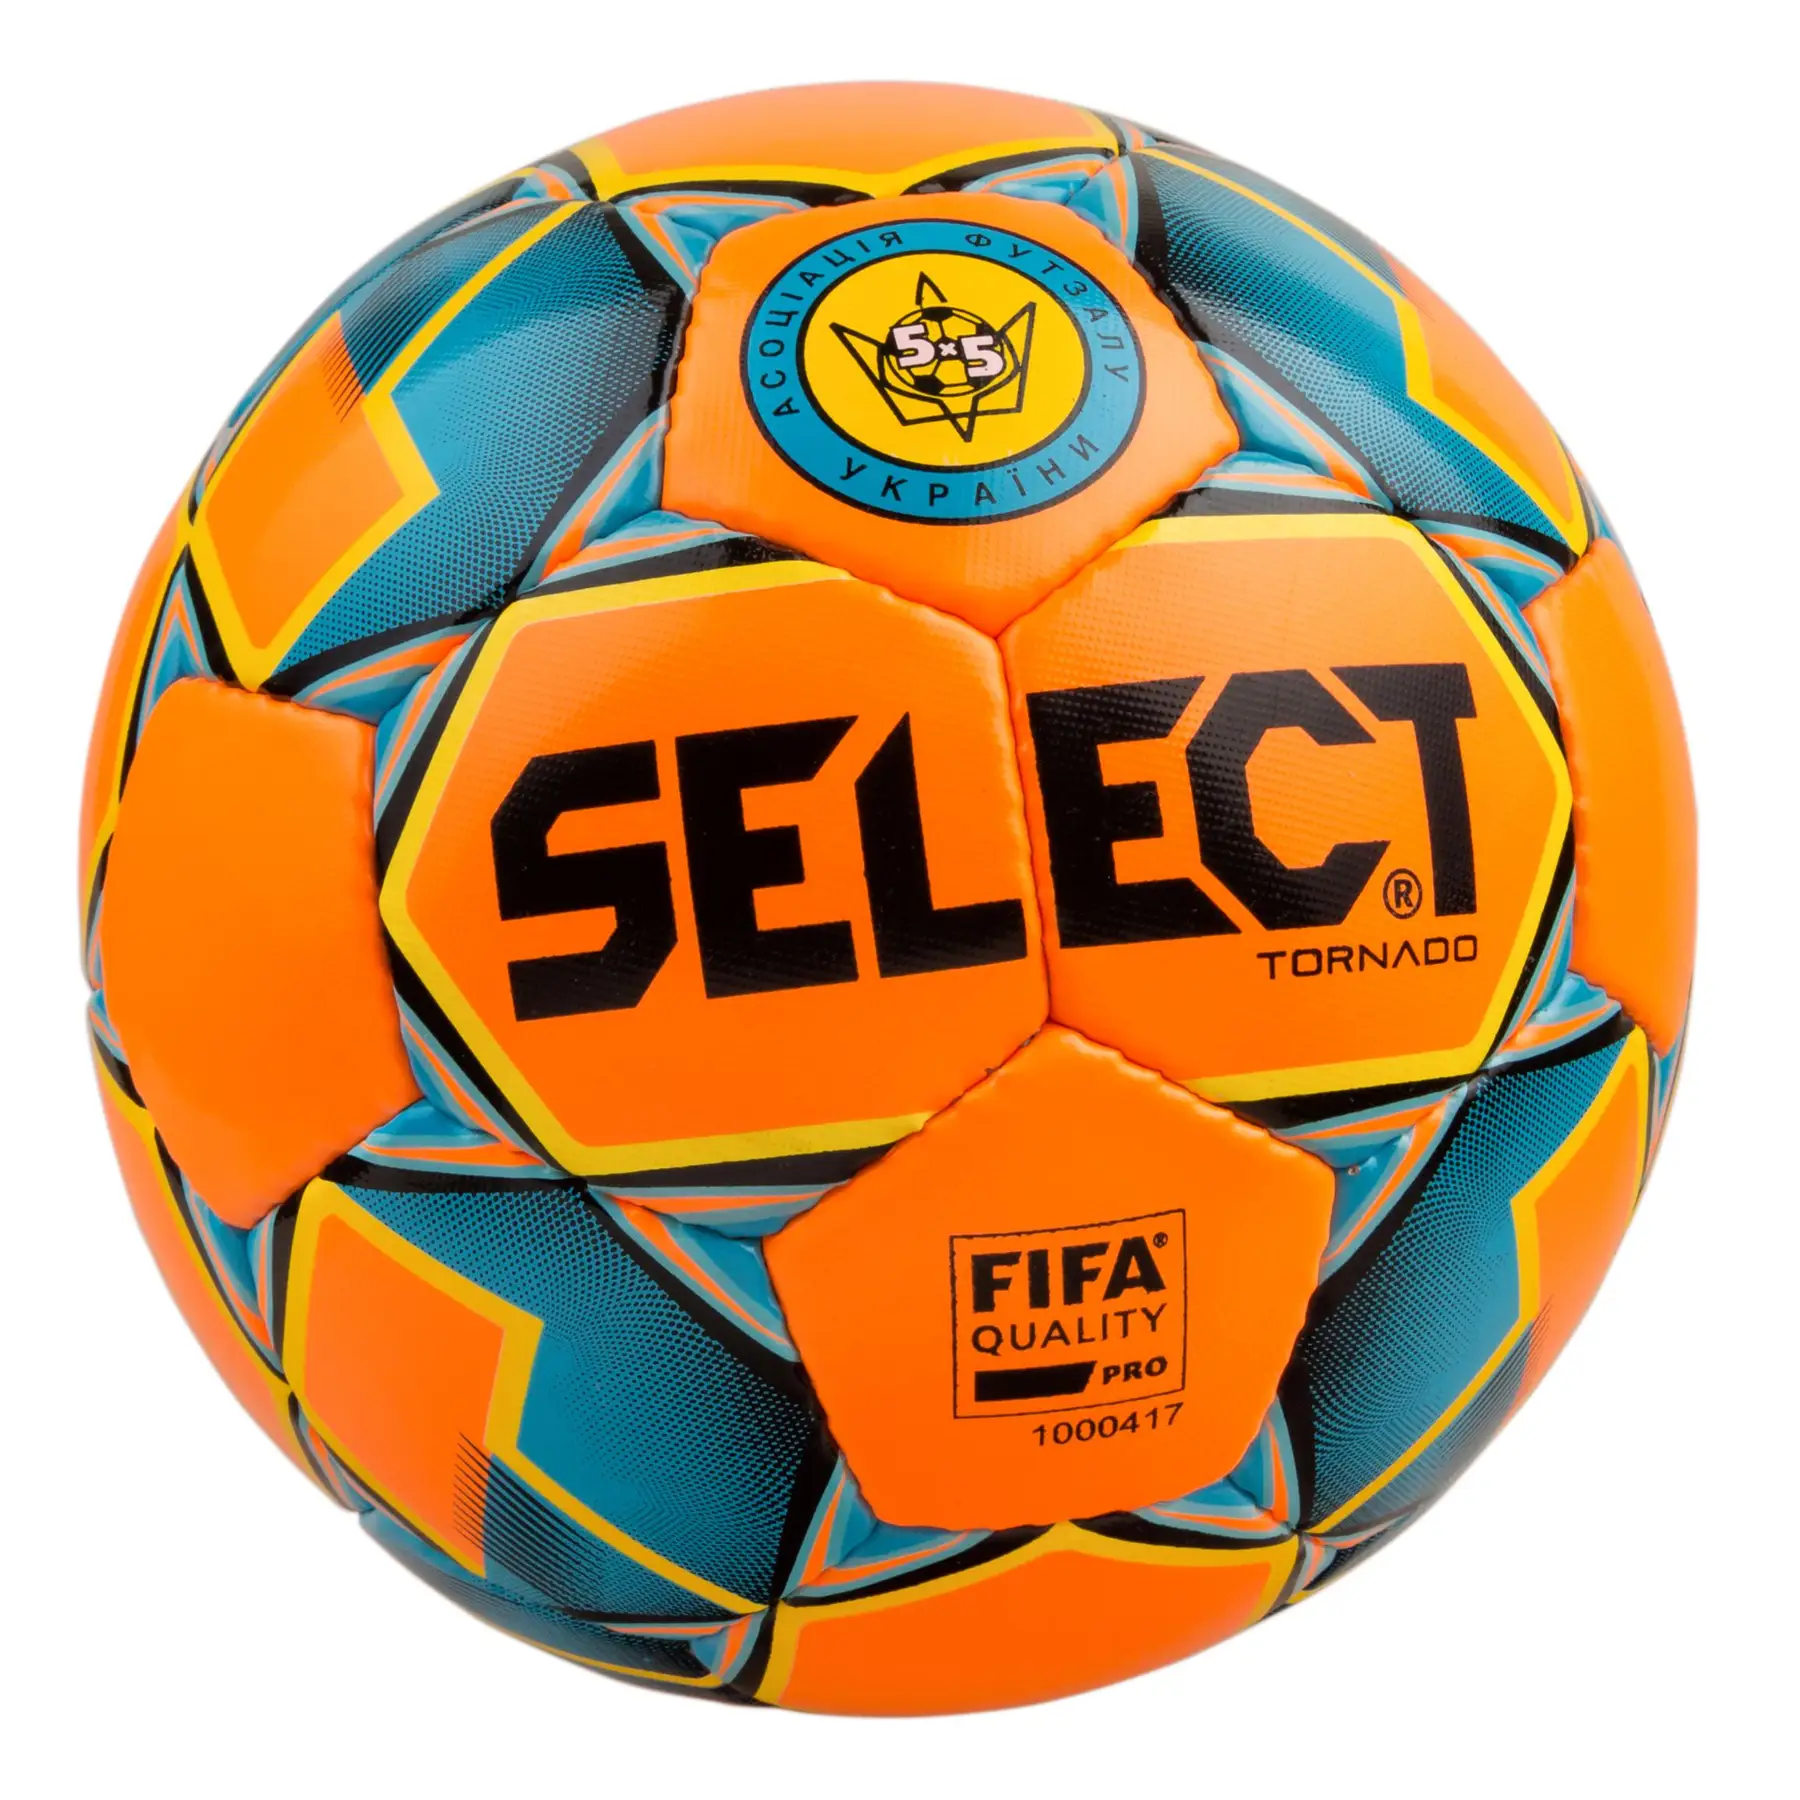 М’яч футзальний SELECT Futsal Tornado (FIFA Quality PRO) помаран/синій